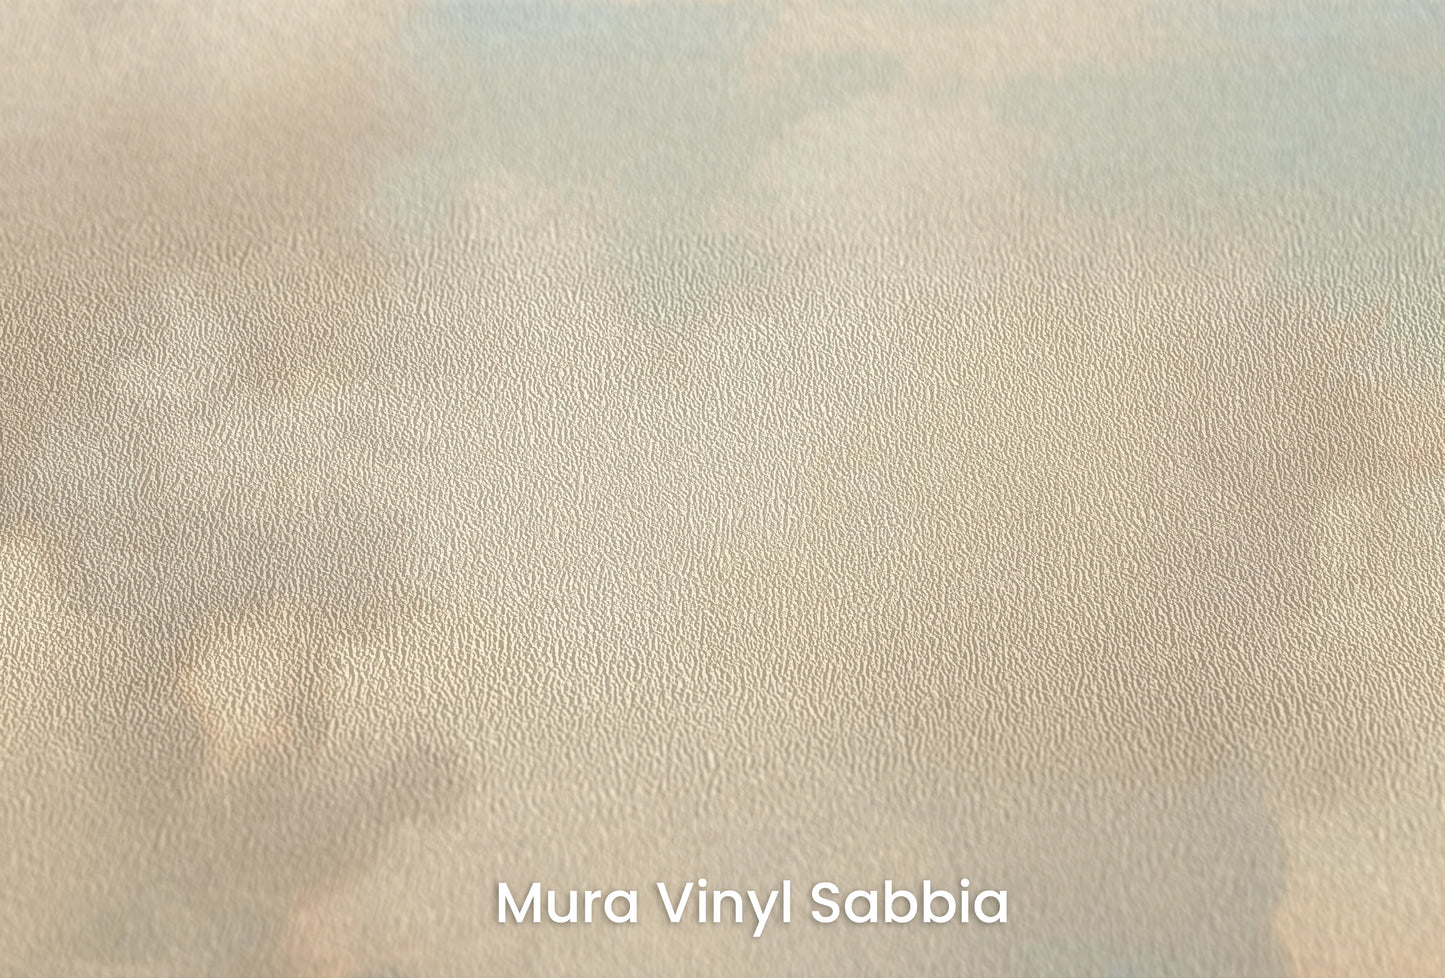 Zbliżenie na artystyczną fototapetę o nazwie Cotton Whispers na podłożu Mura Vinyl Sabbia struktura grubego ziarna piasku.